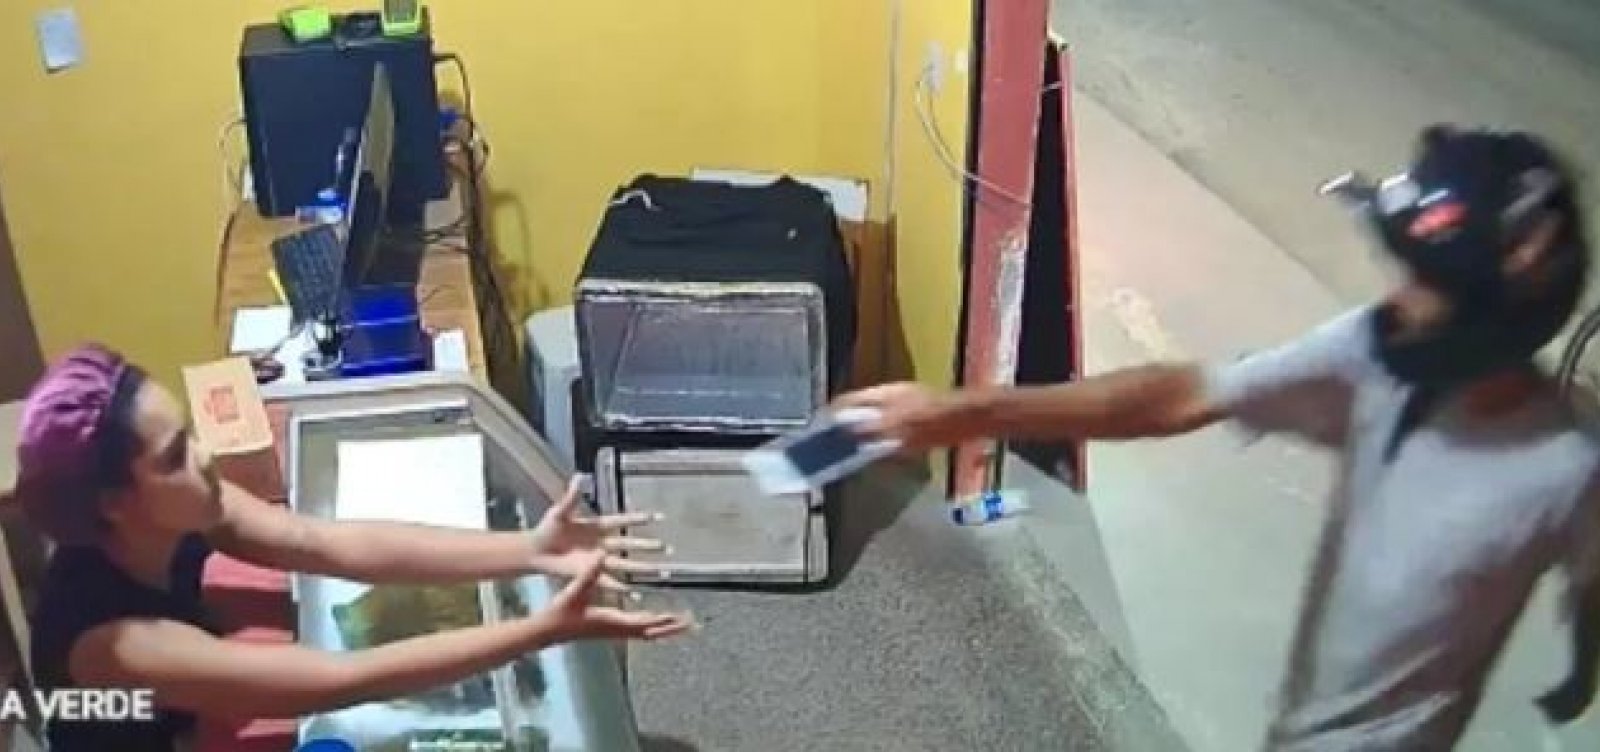 Homem assalta pizzaria em Camaçari mas devolve celular de atendente após apelo 